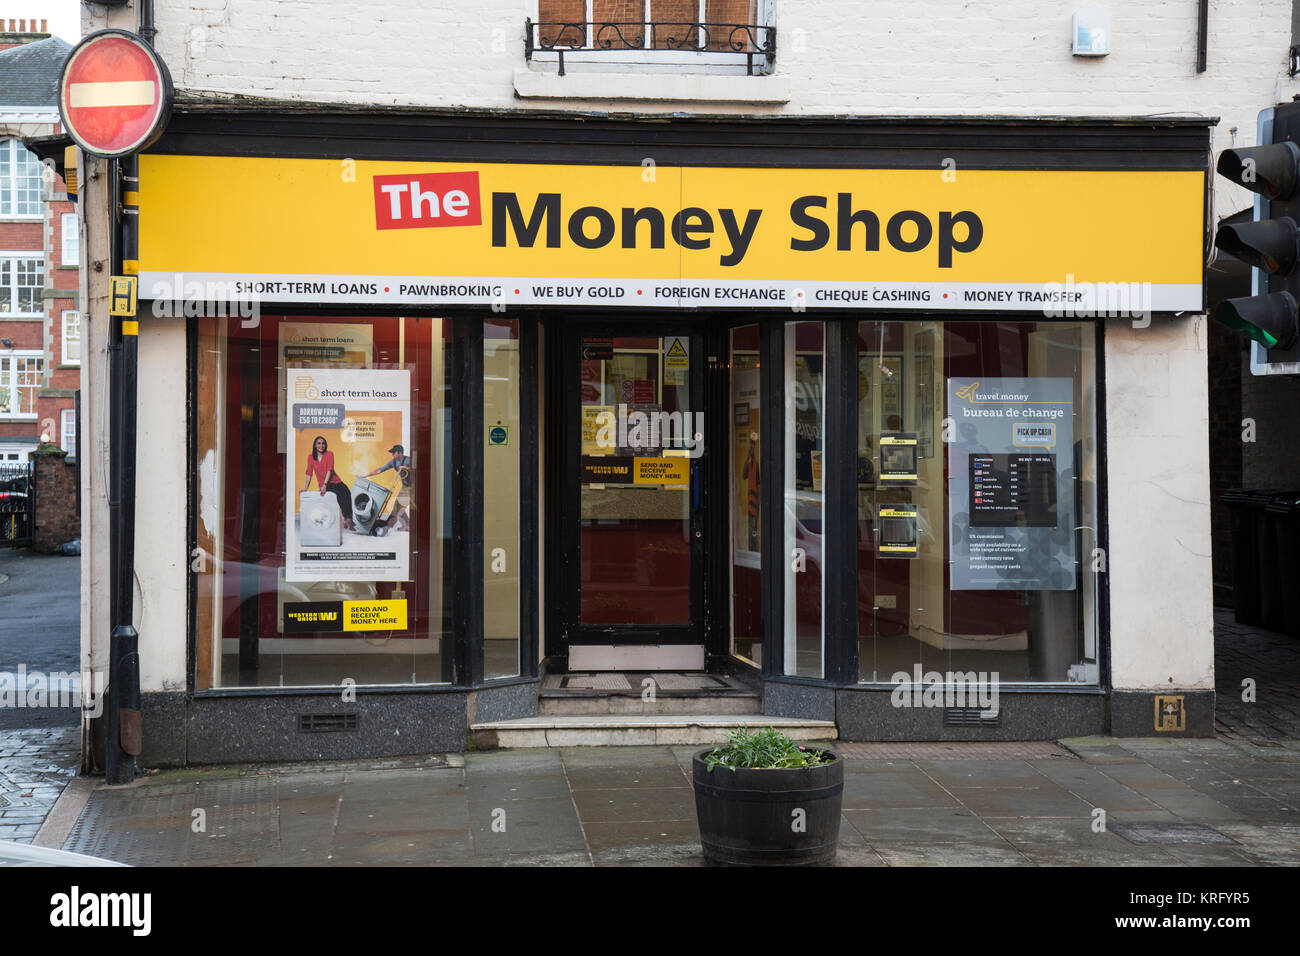 Il negozio di denaro a Shrewsbury, Inghilterra. Prestiti a breve termine, pawnbrokers, gli acquirenti in oro, valuta estera, verificare di incassare, i servizi di trasferimento di denaro. Foto Stock